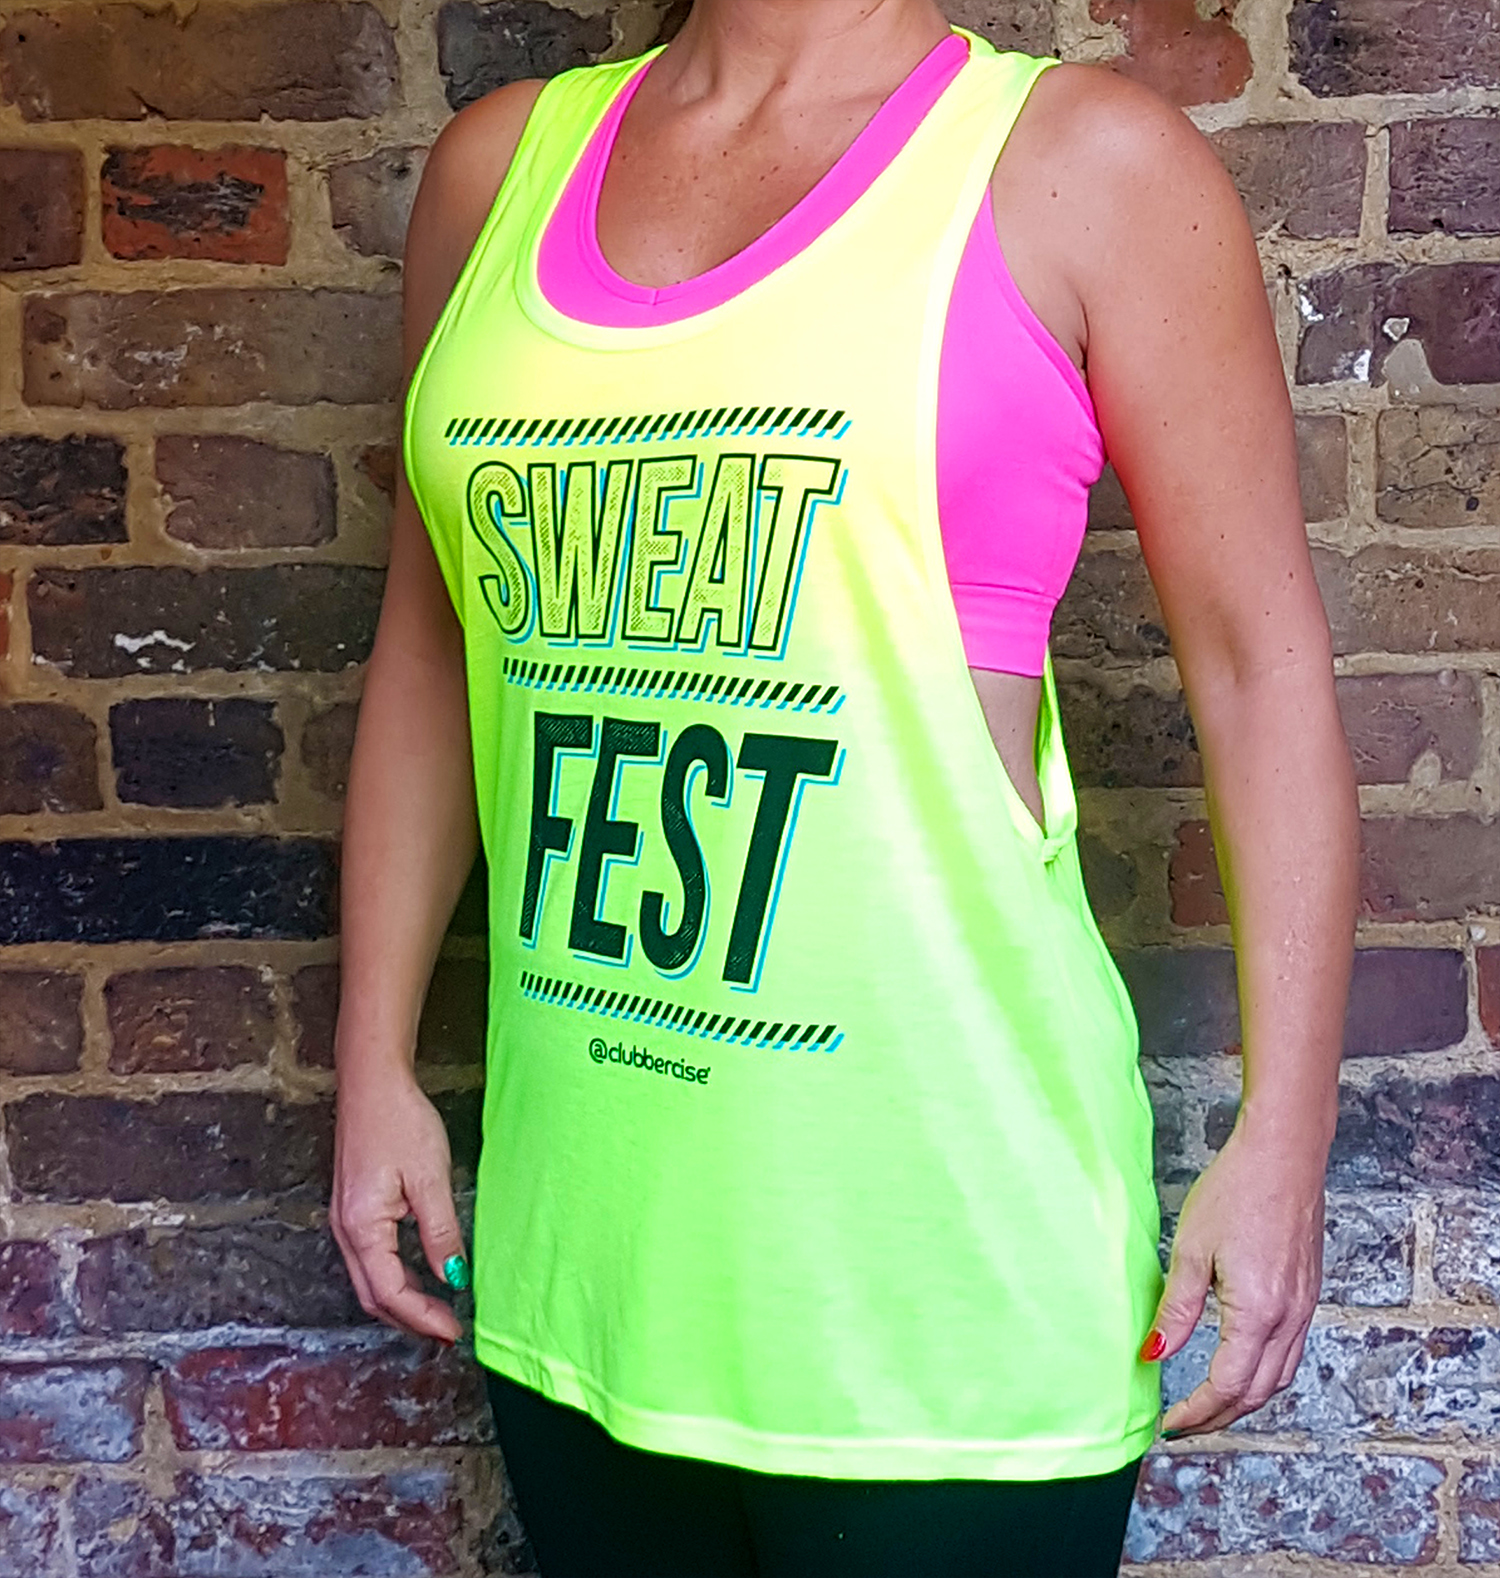 sweatfest-woman